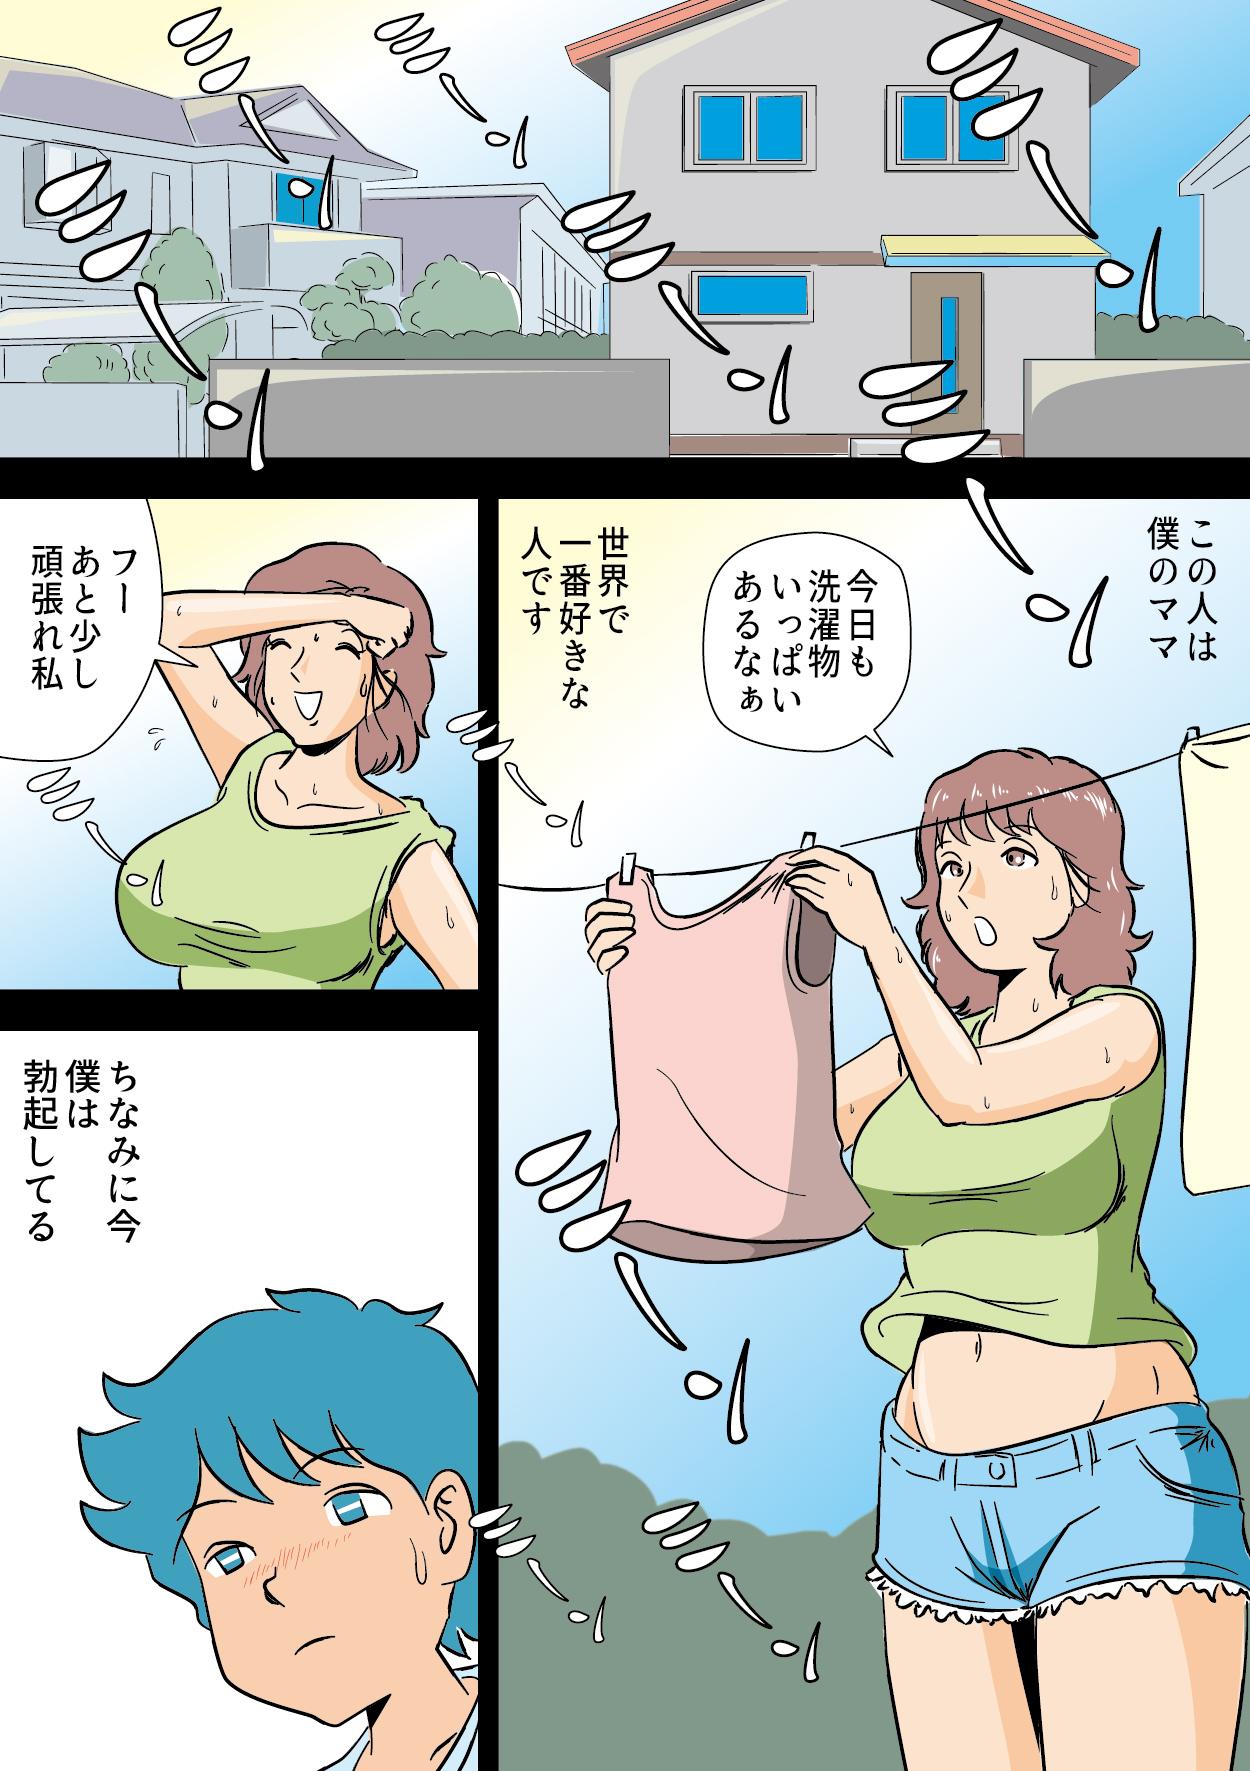 Scandal Bokki ga Osamaranai Boku de Asobu Mama - Original Ex Gf - Page 3